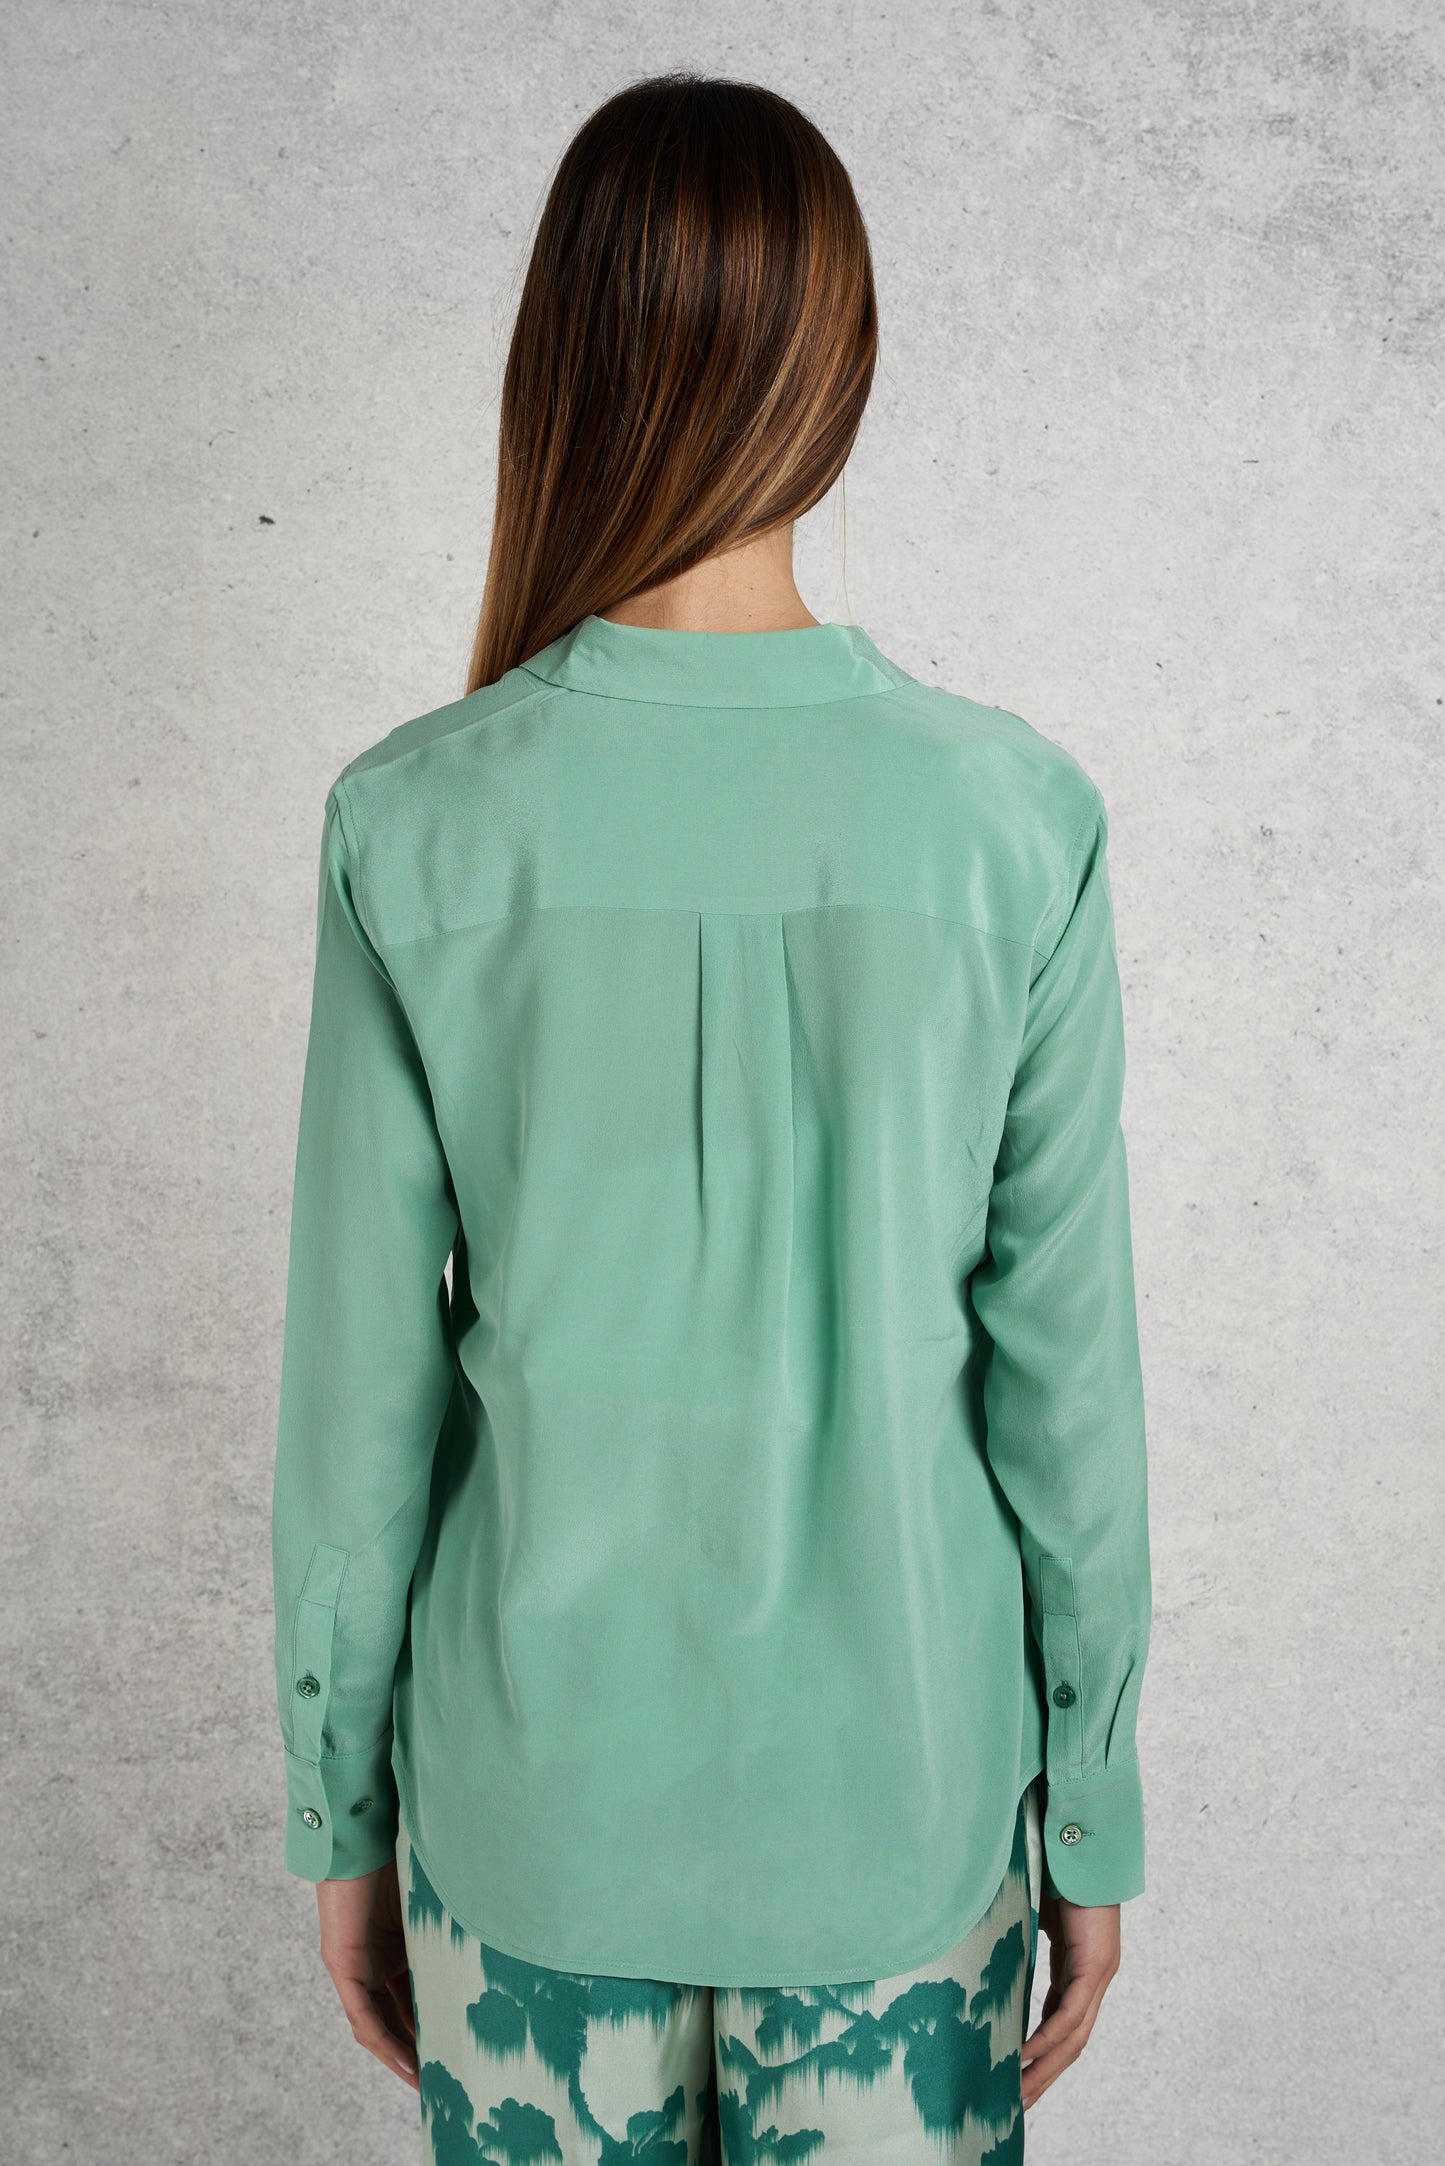  Equipment Femme Green Silk Shirt For Women Verde Donna - 3